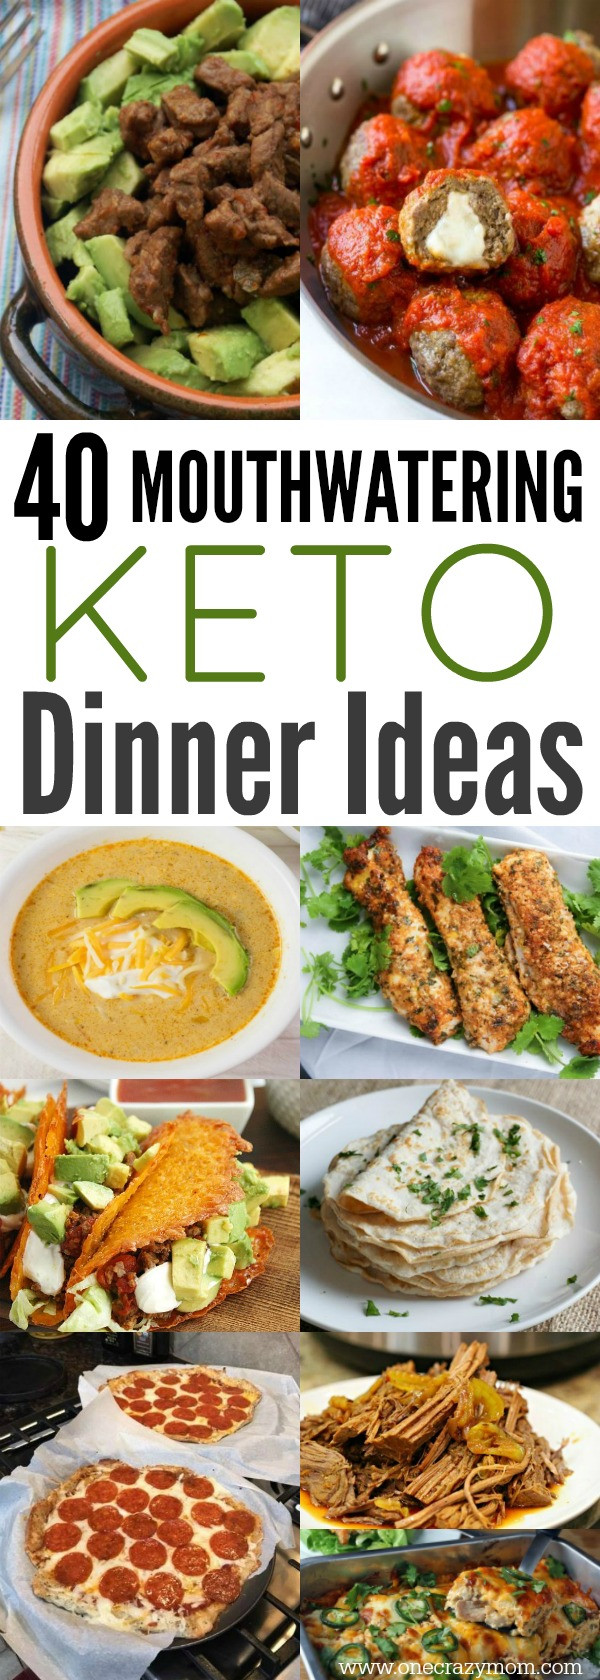 Keto Dinners Easy
 Easy Keto Dinner Ideas 40 Easy Keto Dinner Recipes